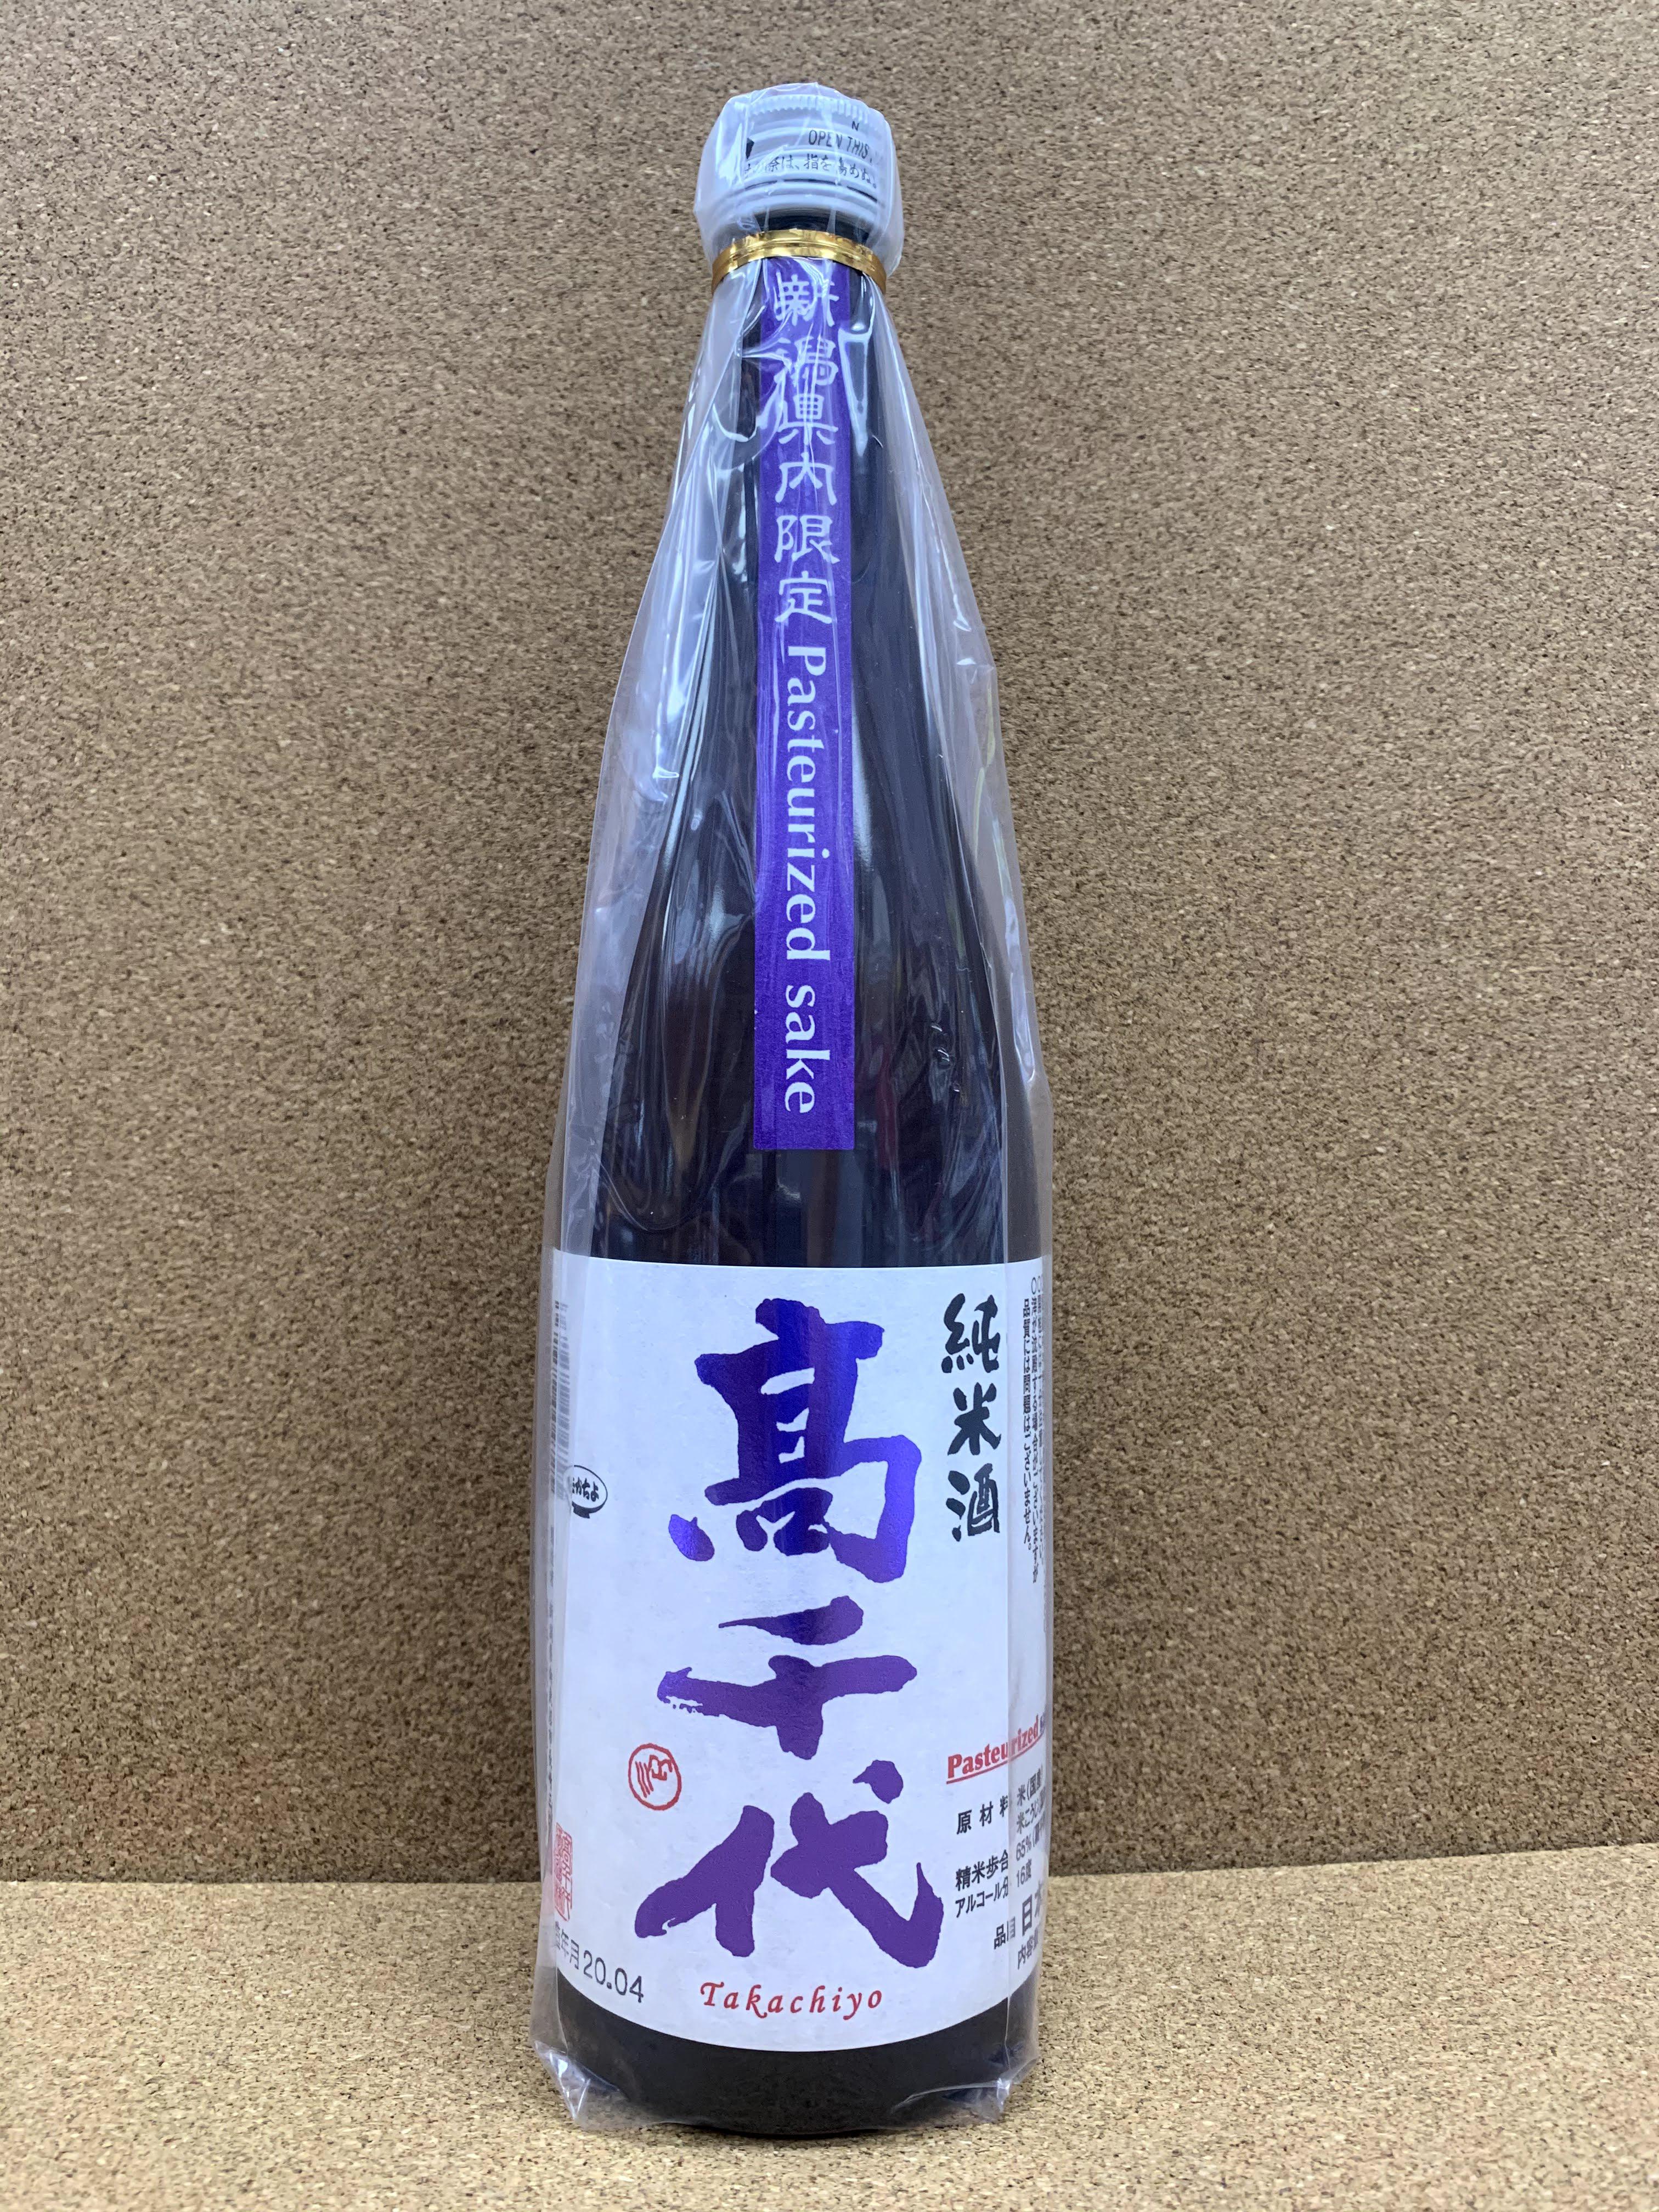 高千代 純米酒火入 紫 Pasteurized sake 1.8L